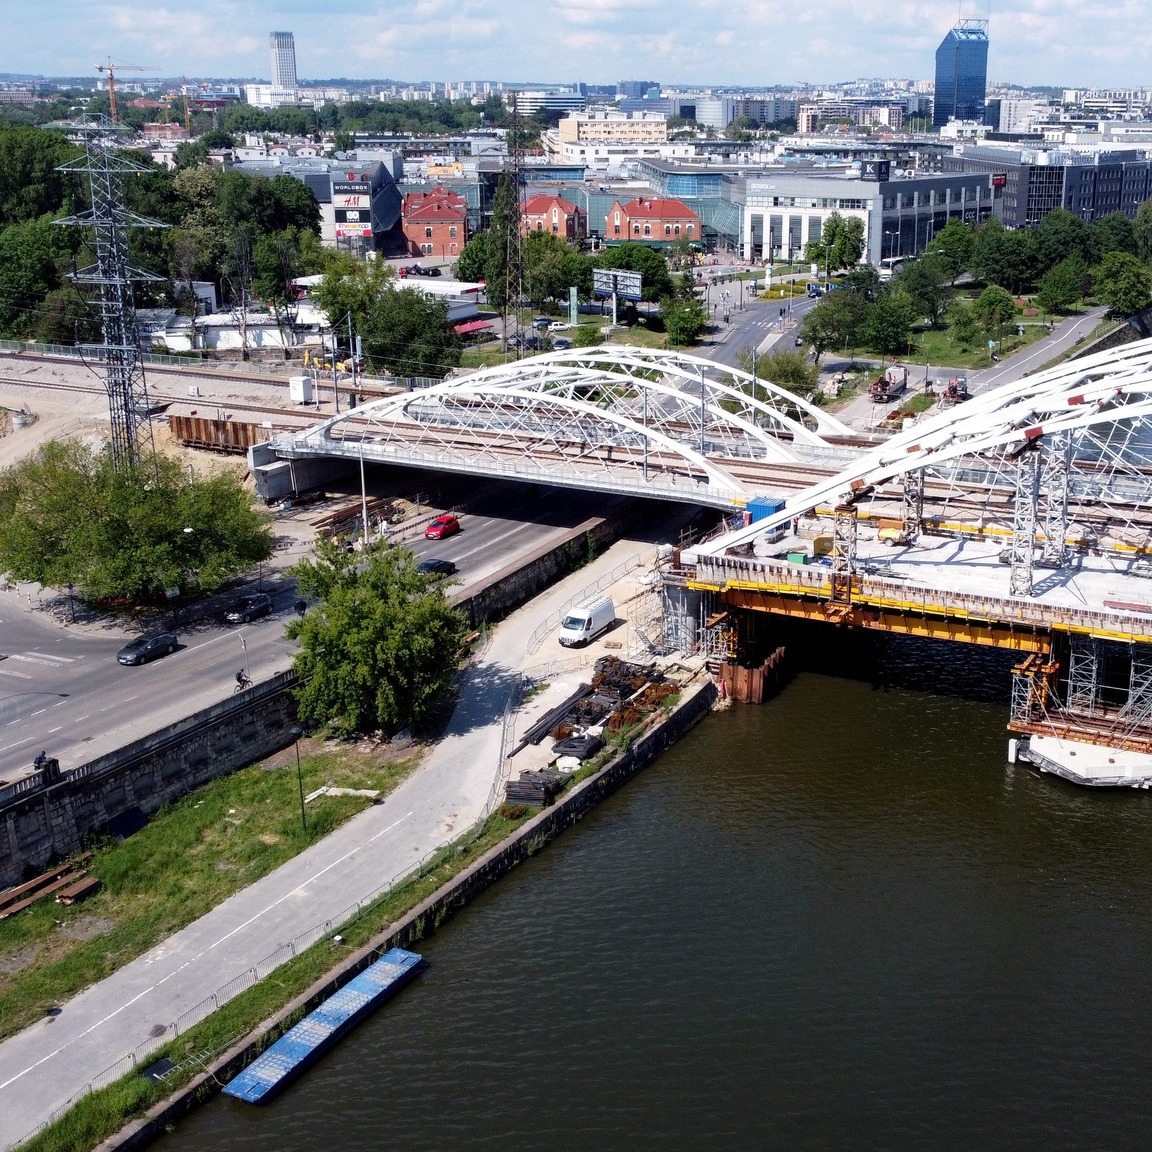 Zdjęcia przedstawiają most kolejowy na Bulwarze Kurlandzkim w Krakowie.